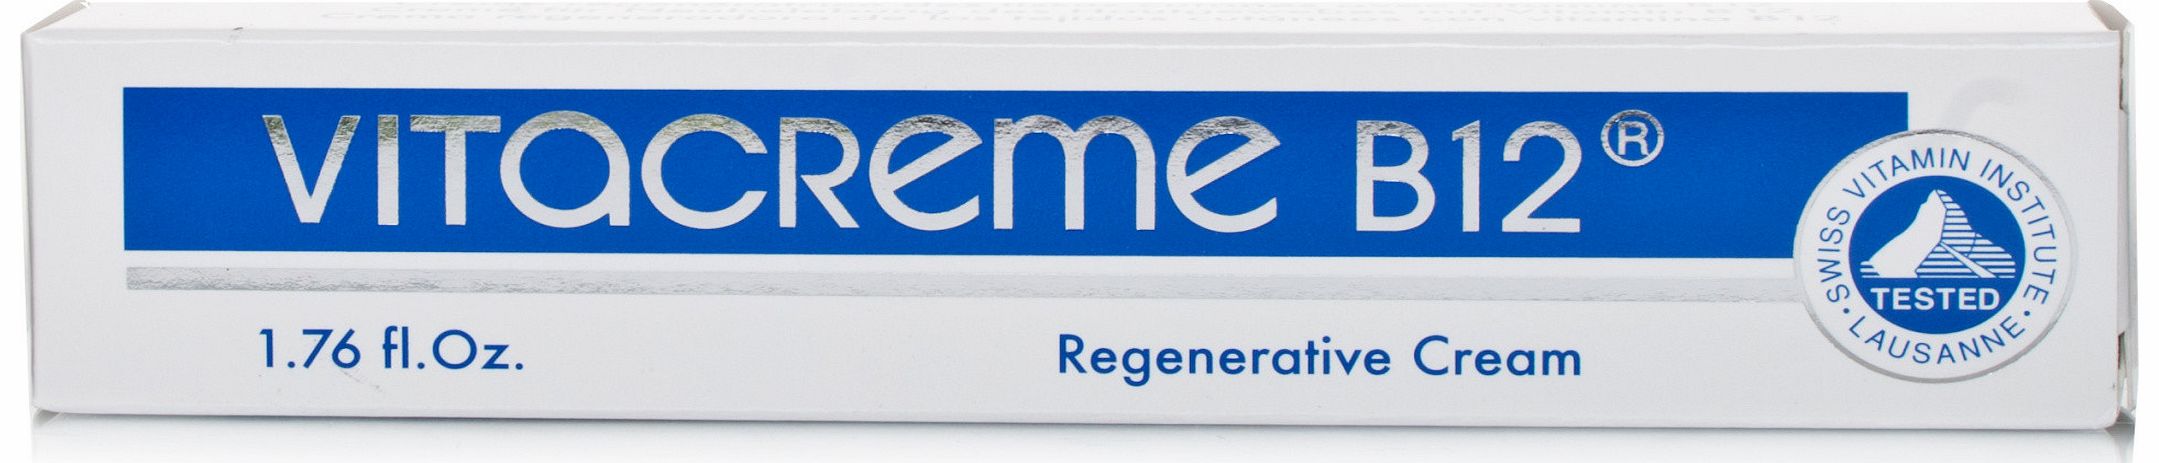 Vitacreme B12 Regenerative Cream